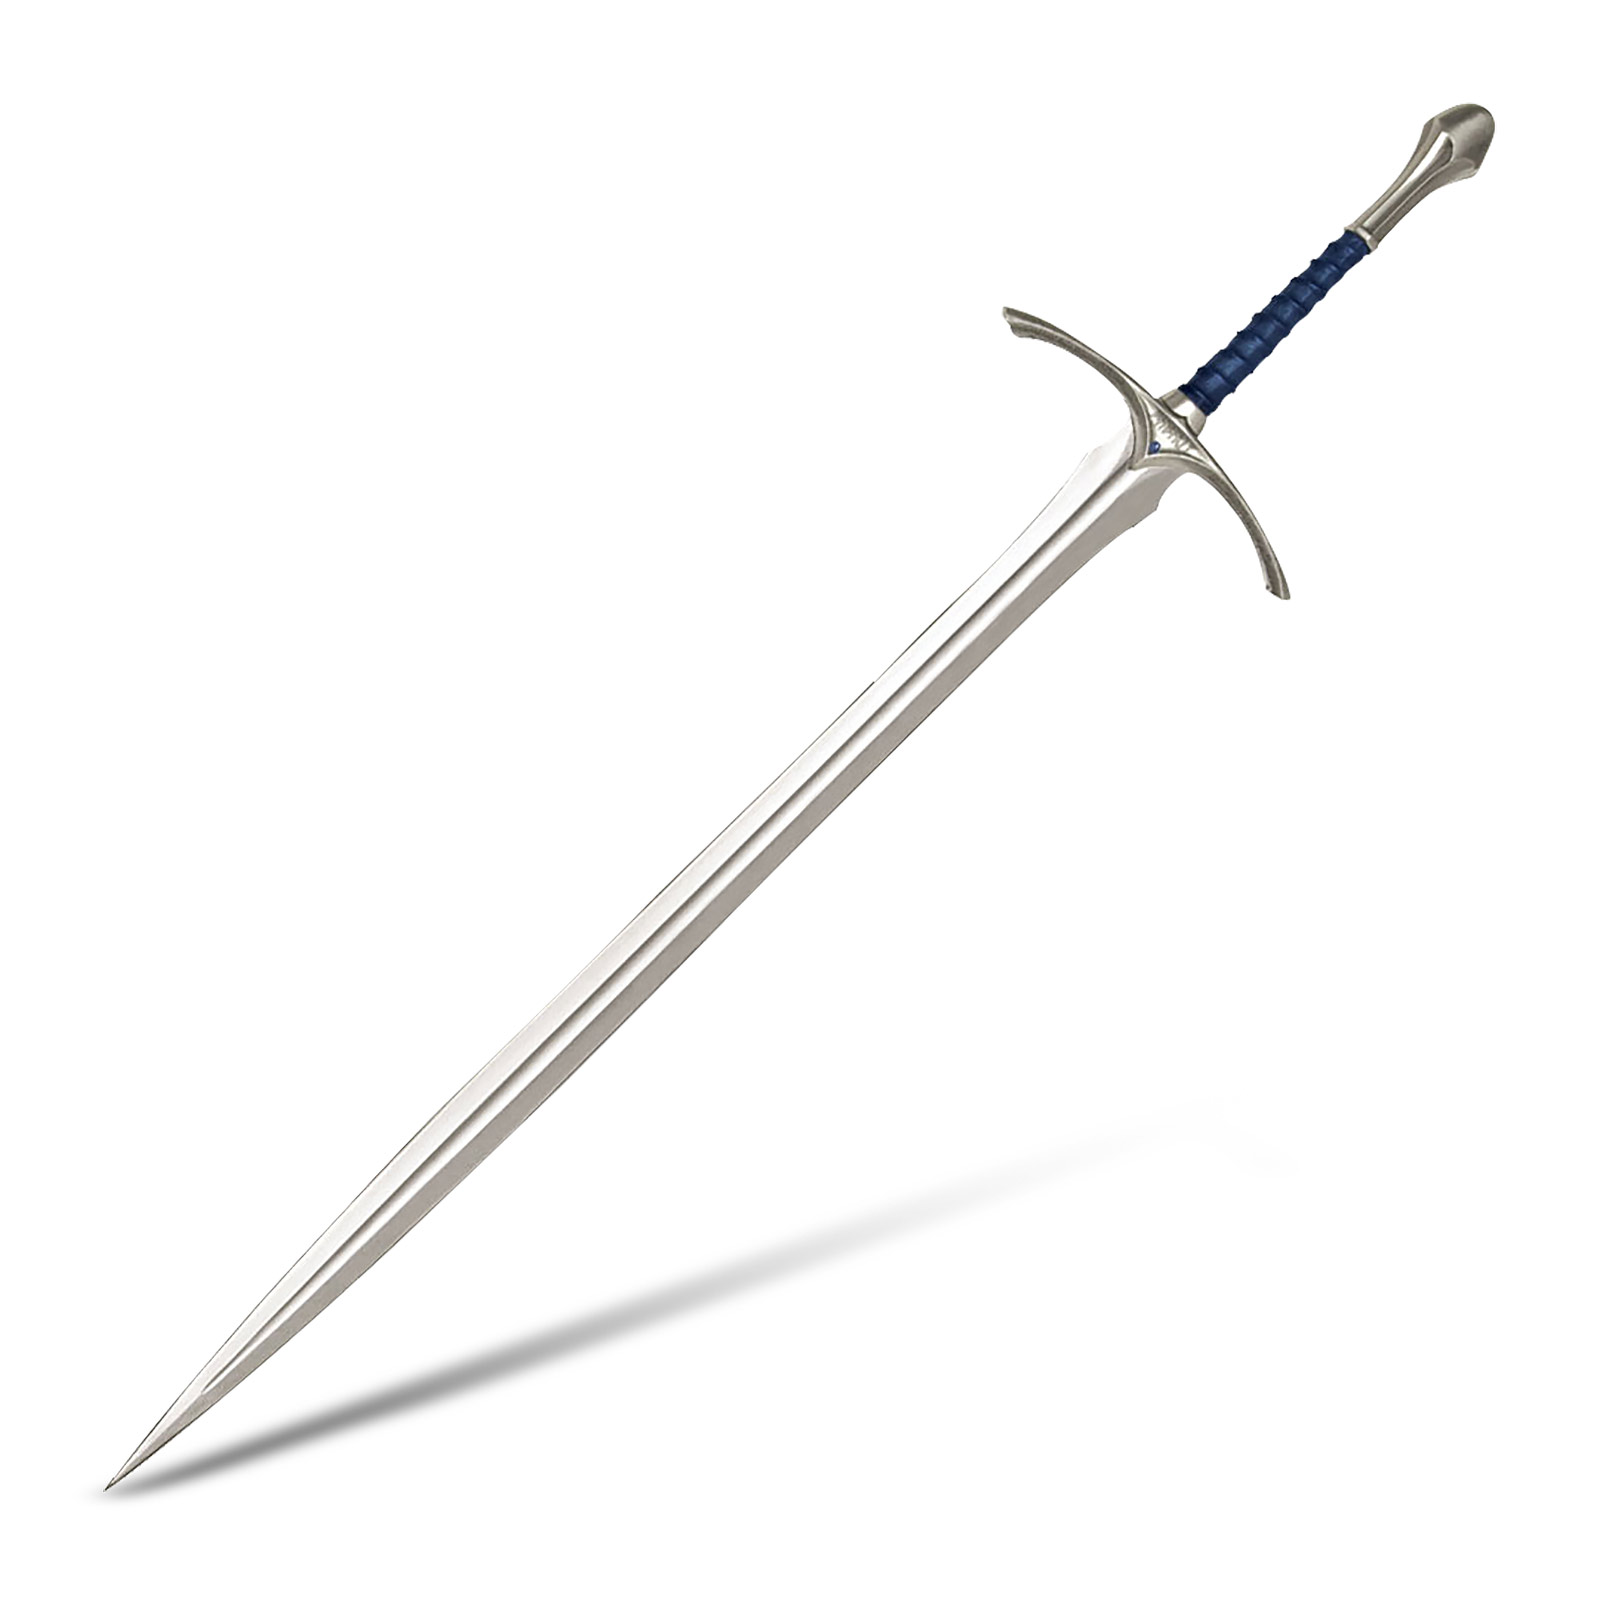 Réplique de l'épée Glamdring de Gandalf - Le Seigneur des Anneaux